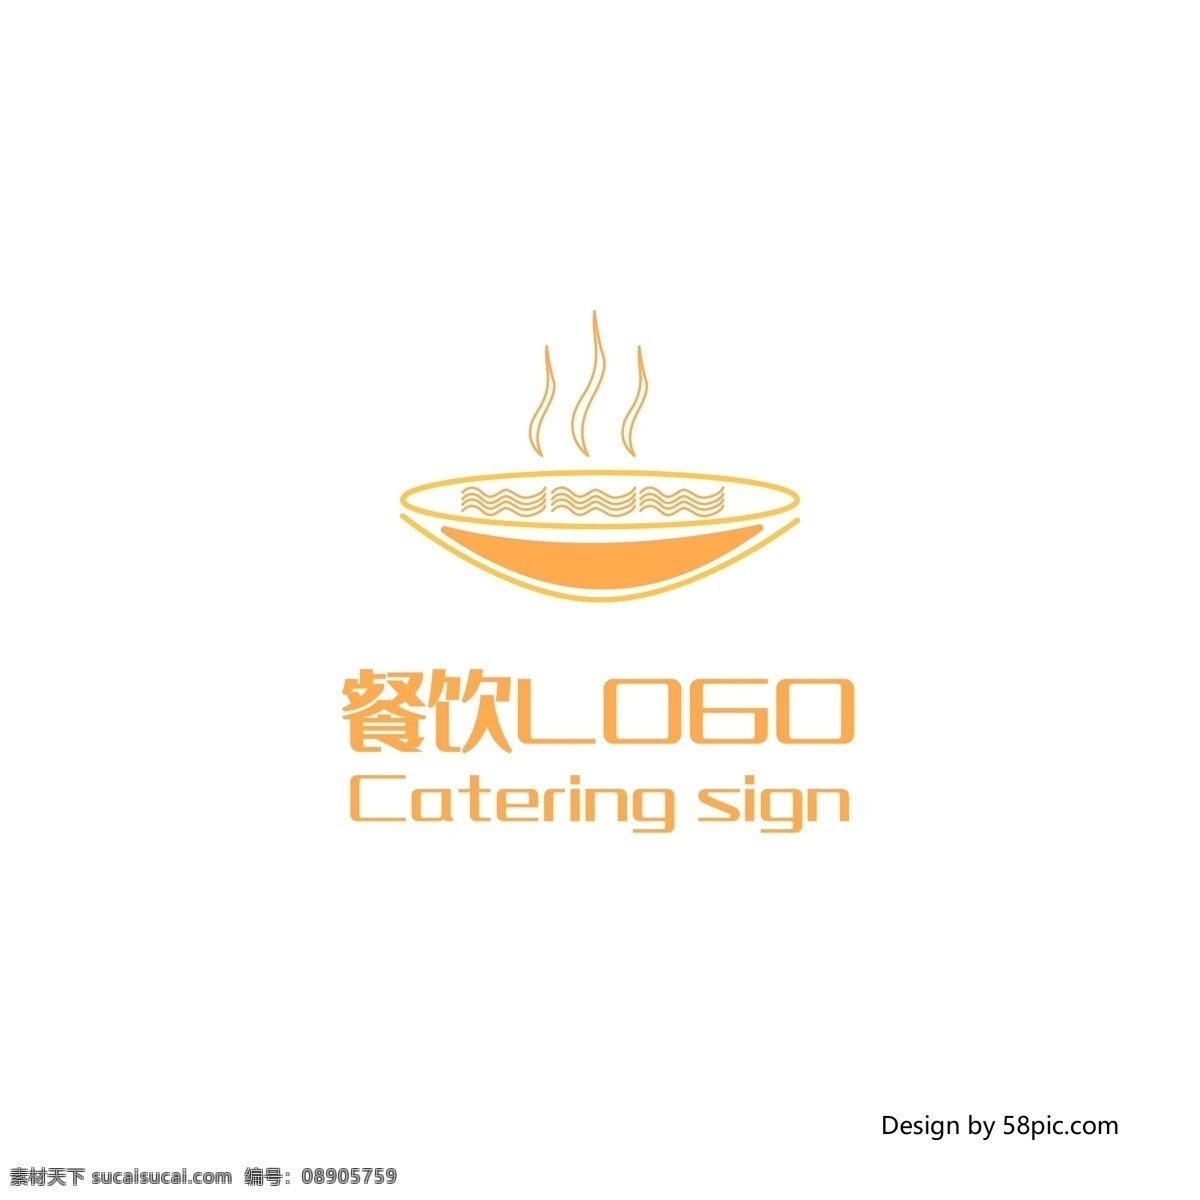 原创 创意 手绘 面馆 面食 餐饮 餐厅 logo 标志 可商用